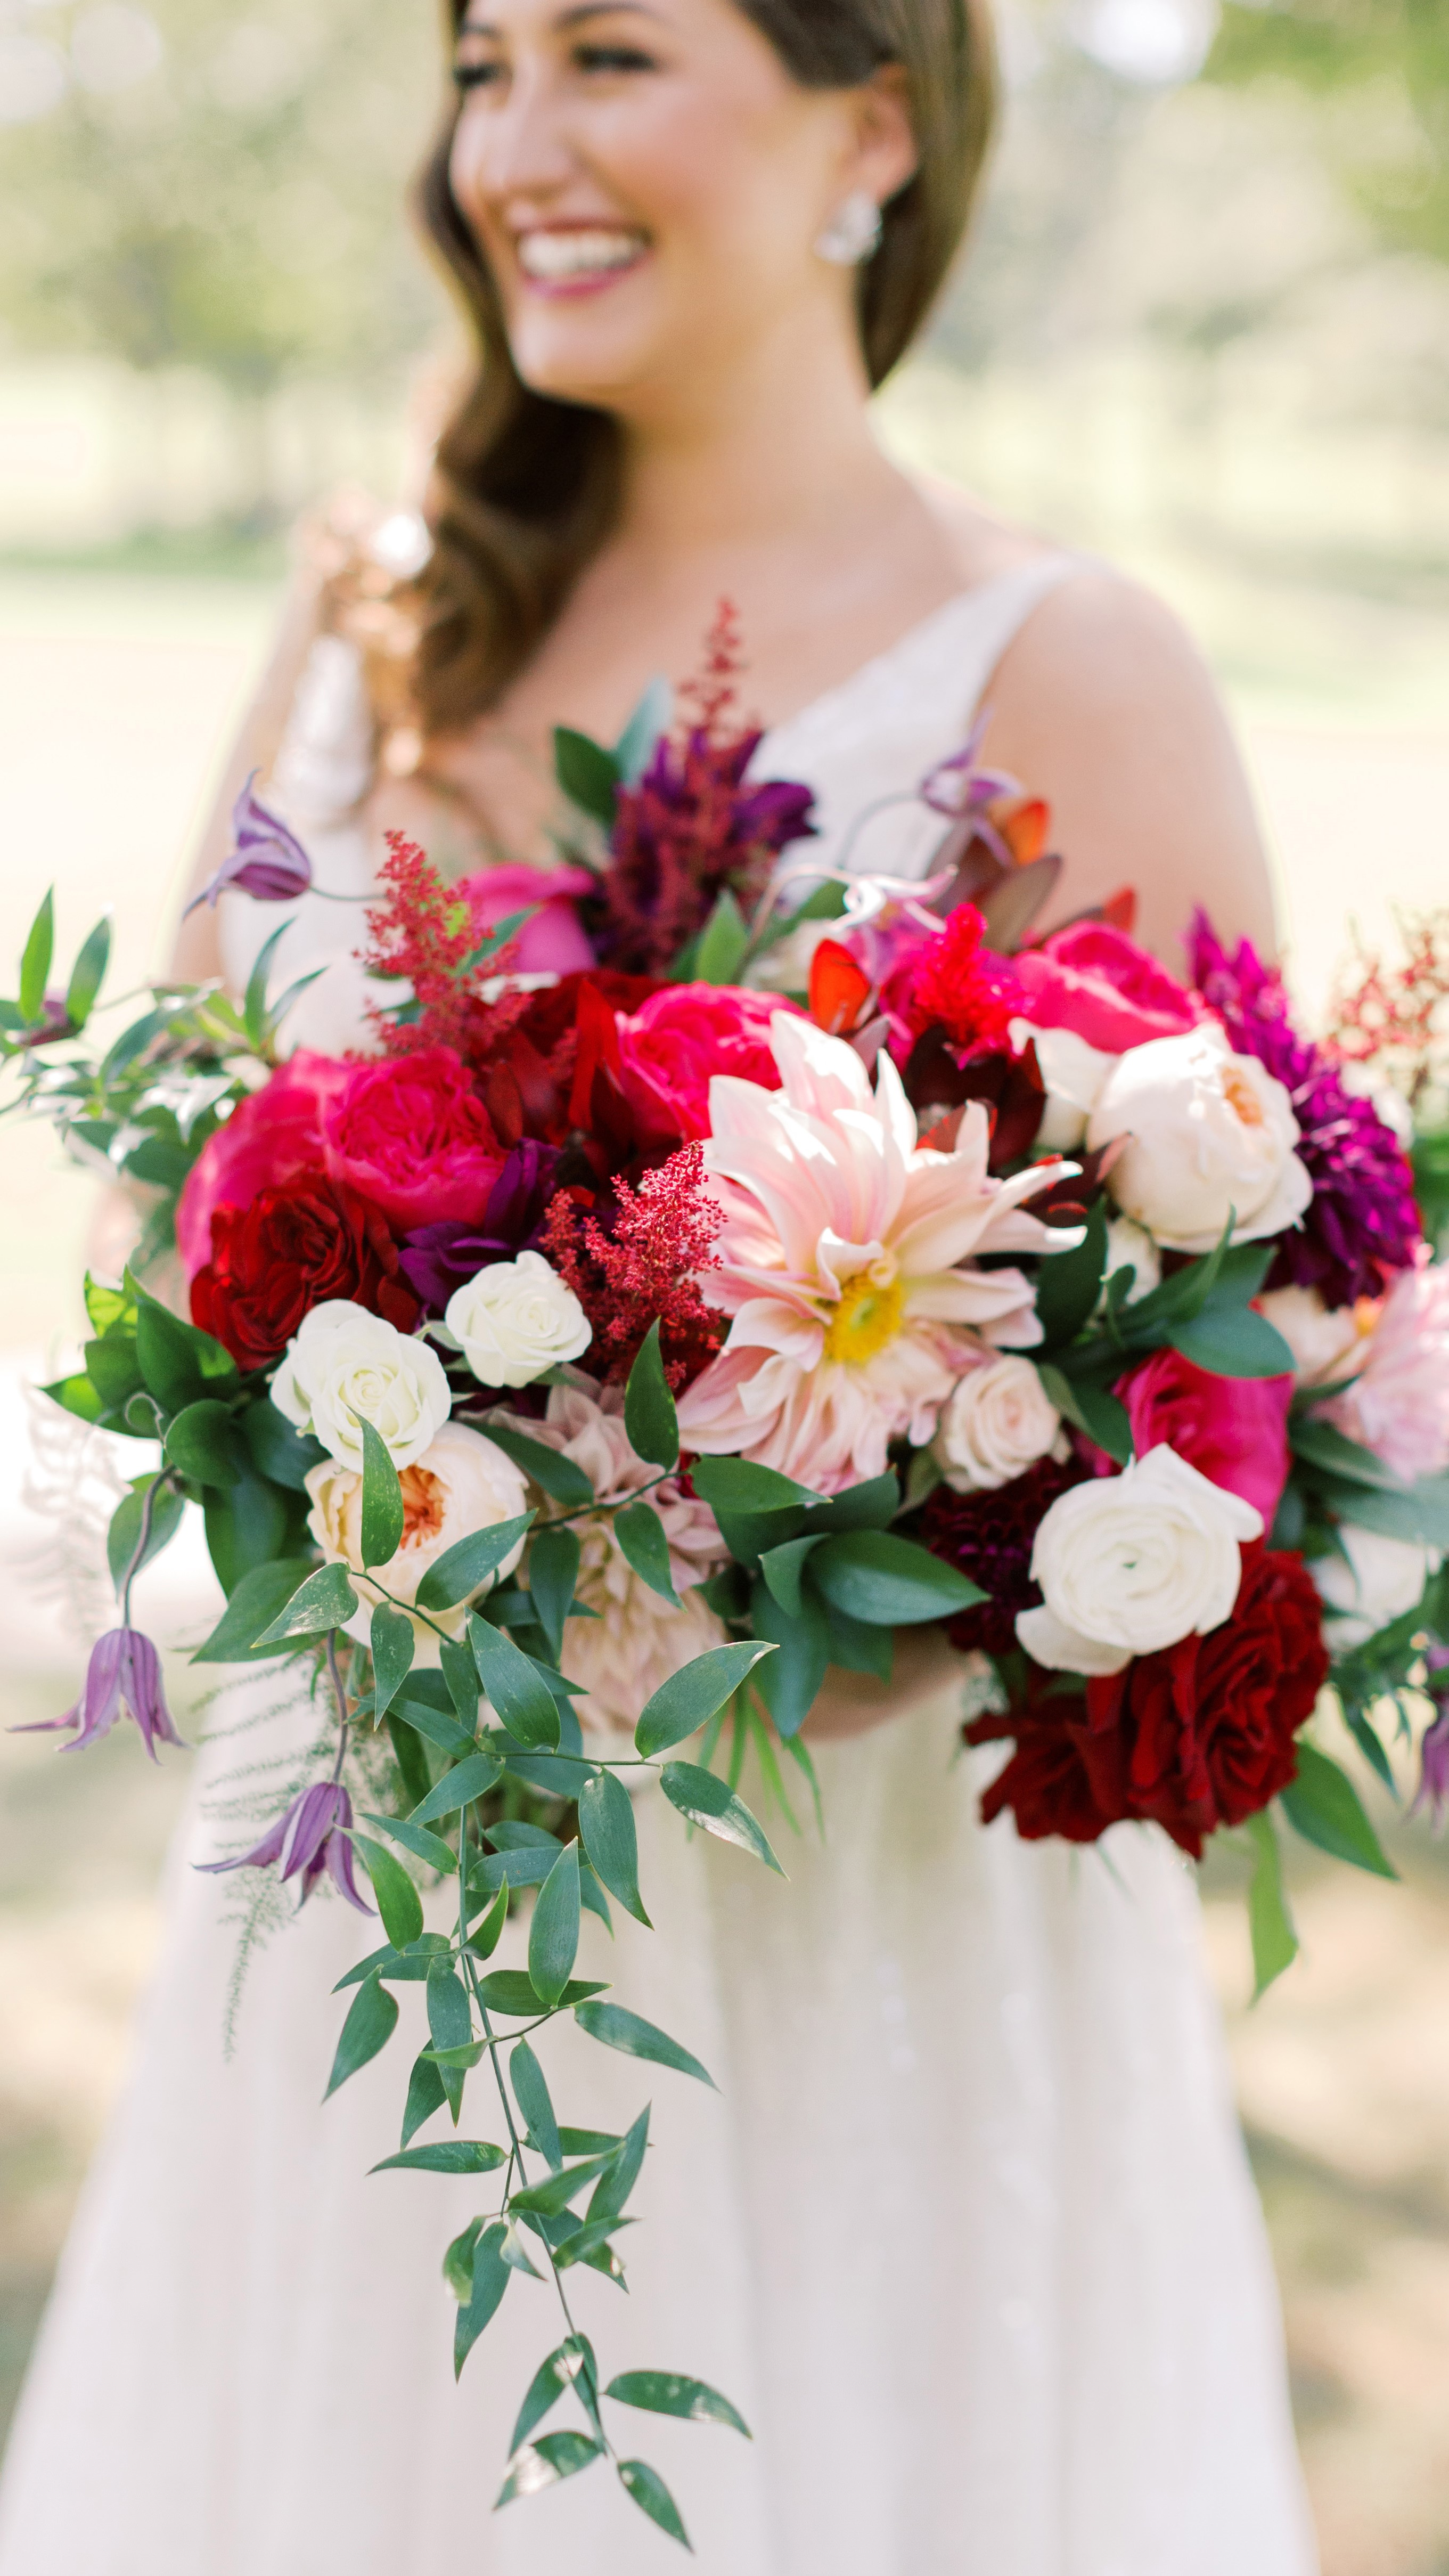 Window, floral decoration, bride, gesture, joy Heavy Weights